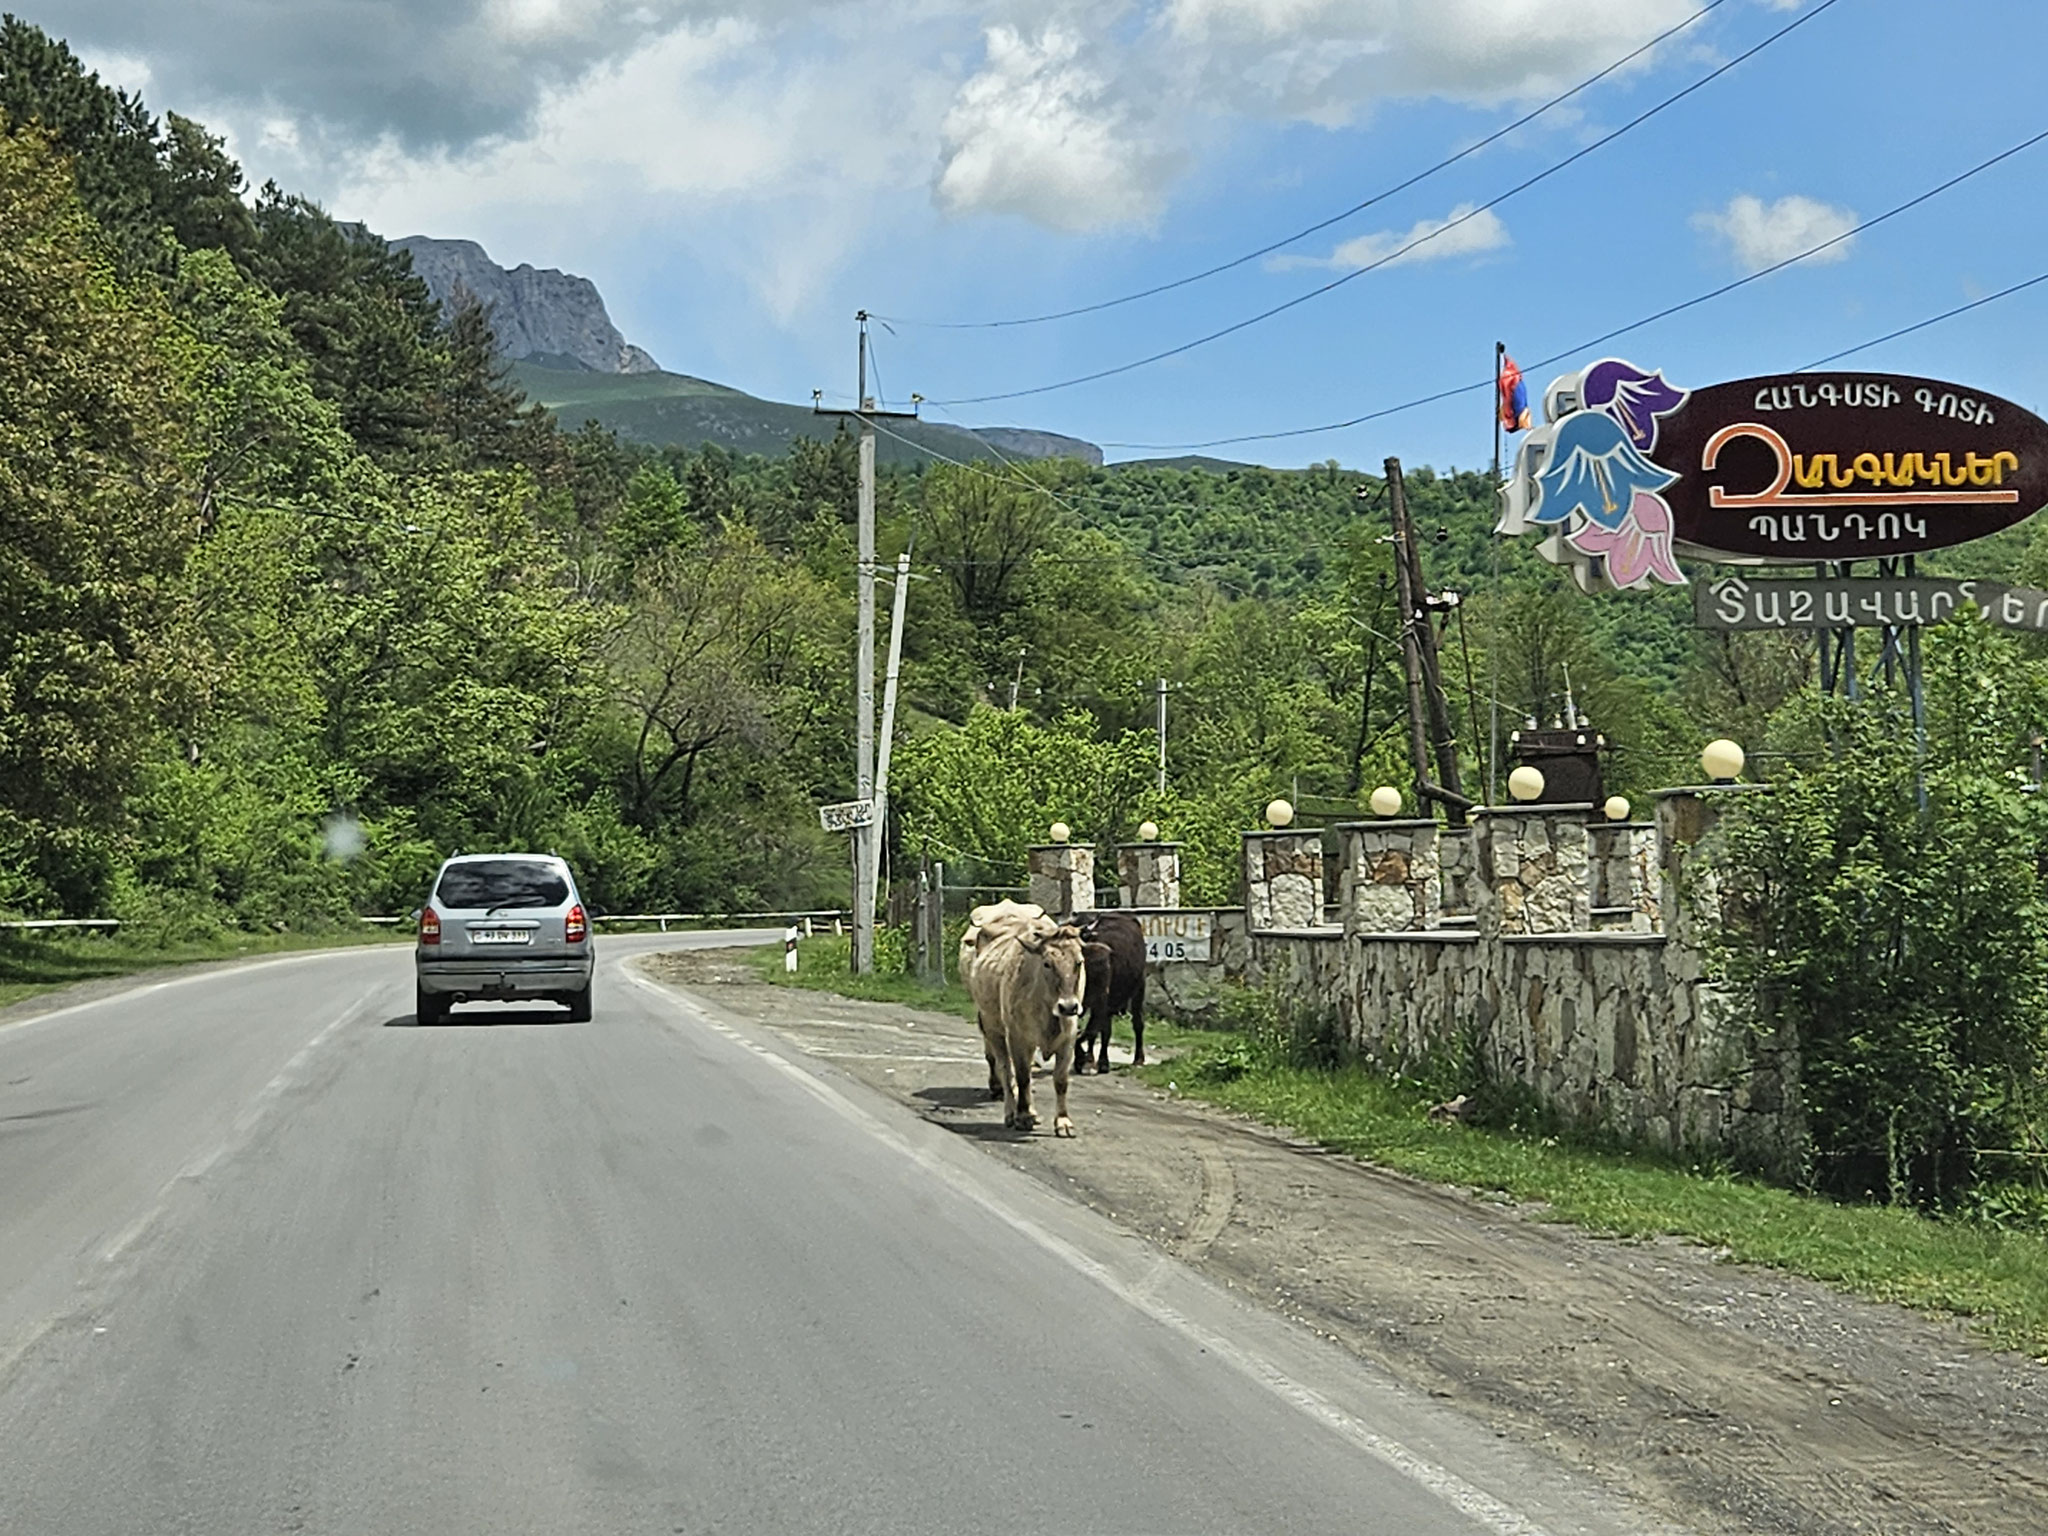 Kühe in Armenien